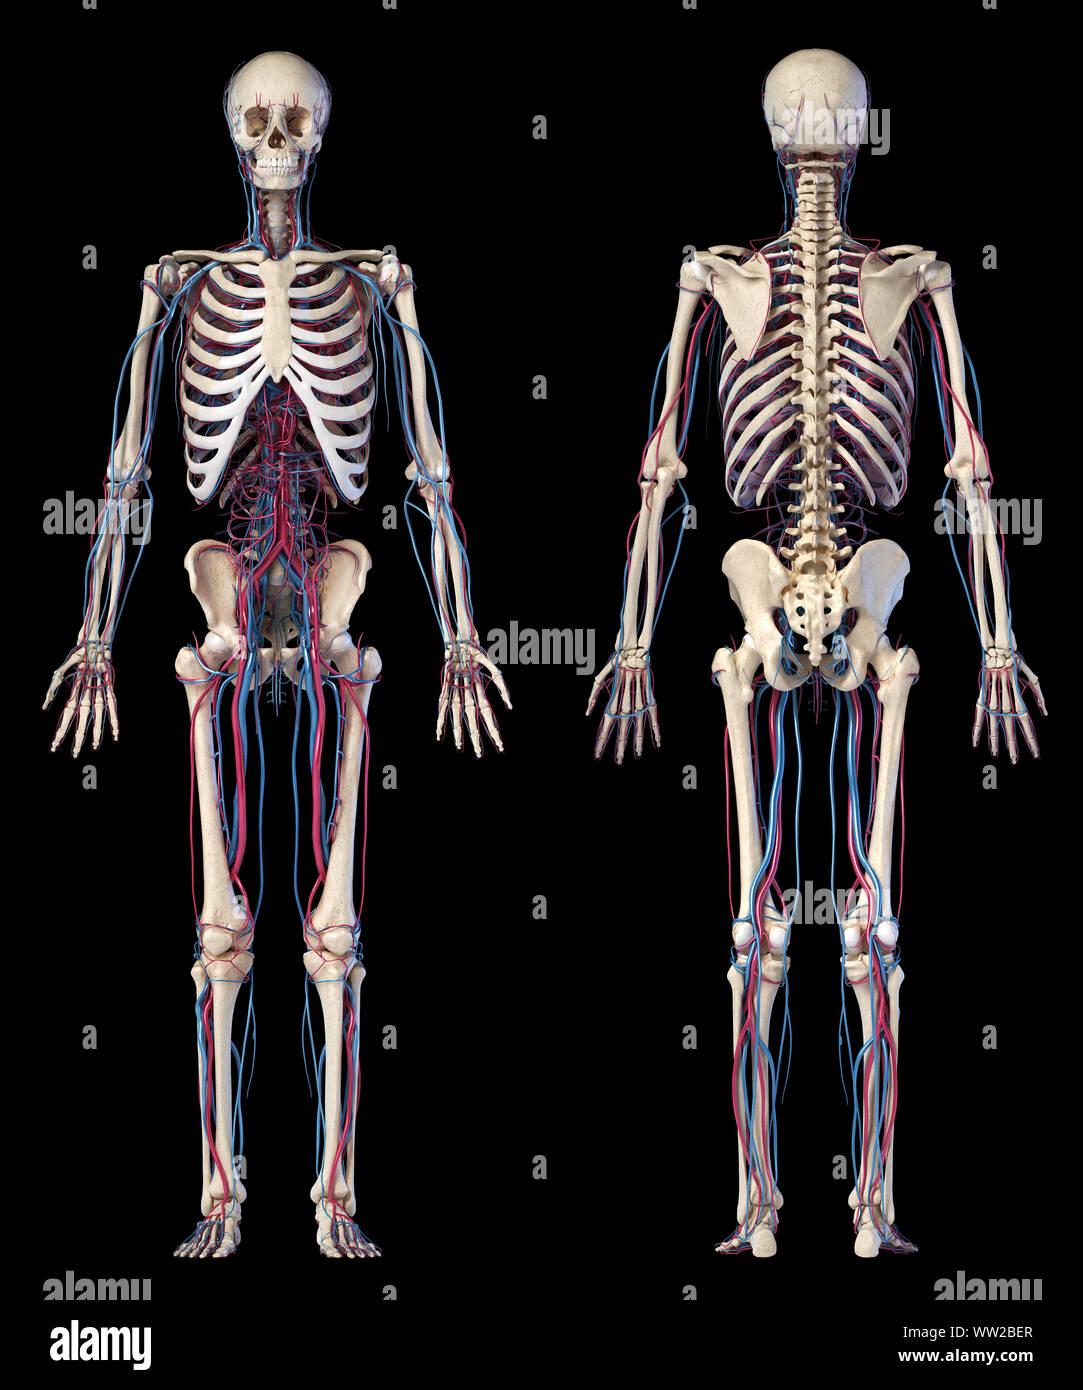 L'anatomie du corps humain. 3d illustration des complications osseuses et cardiovasculaire. Deux fois, avant et arrière. Sur fond noir. Banque D'Images